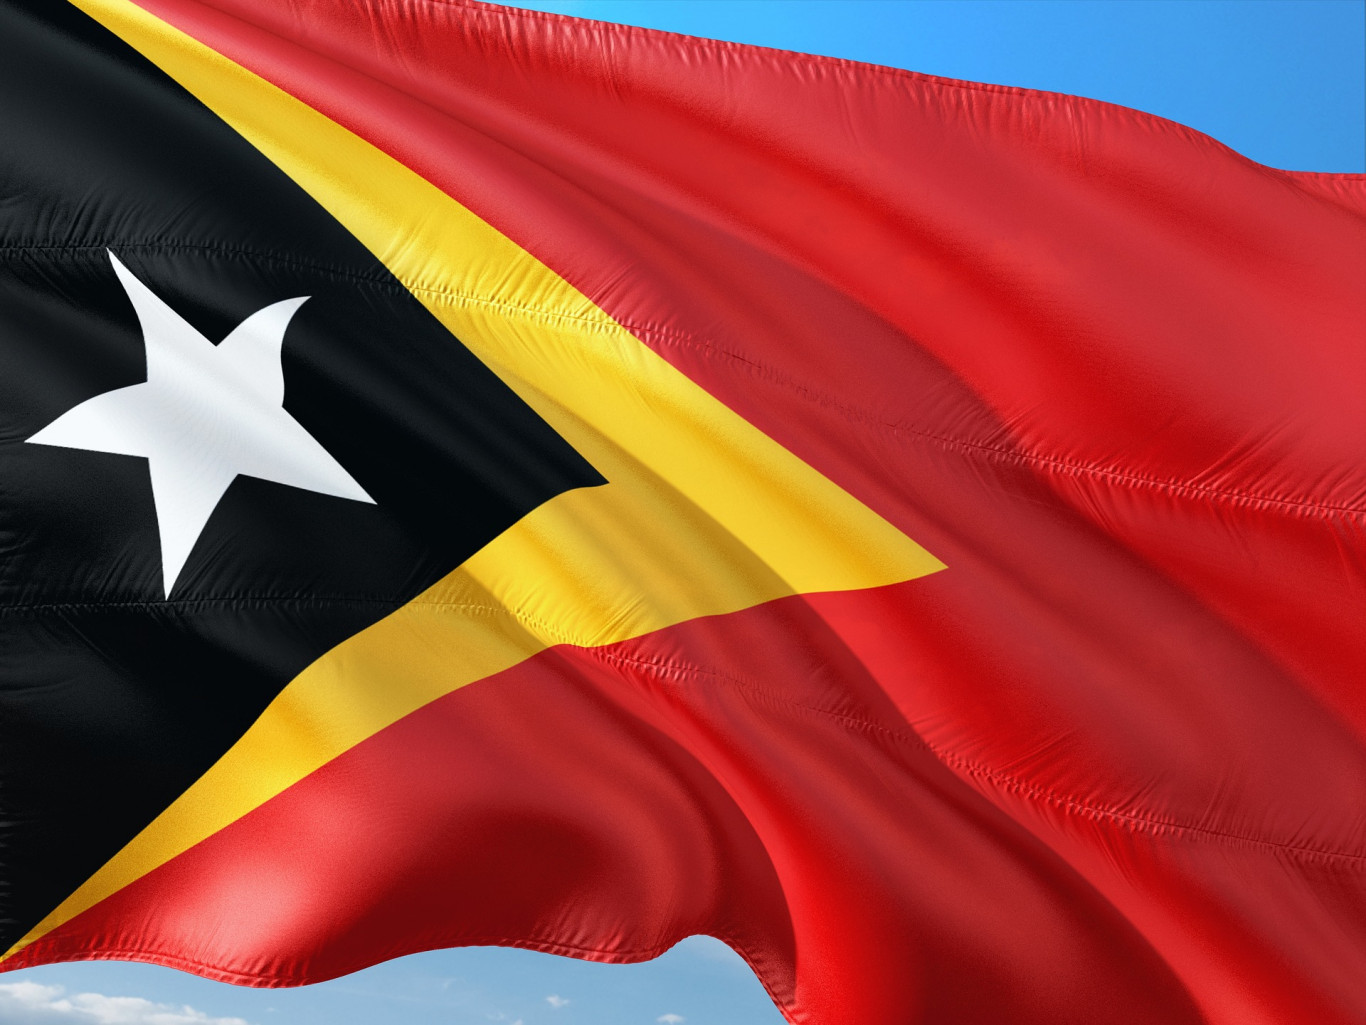 Mẫu giấy chứng nhận đăng ký nhãn hiệu tại Timor Leste, Mẫu giấy chứng nhận đăng ký nhãn hiệu tại East Timor, Giấy chứng nhận đăng ký nhãn hiệu tại Timor Leste, chứng nhận đăng ký nhãn hiệu tại Timor Leste